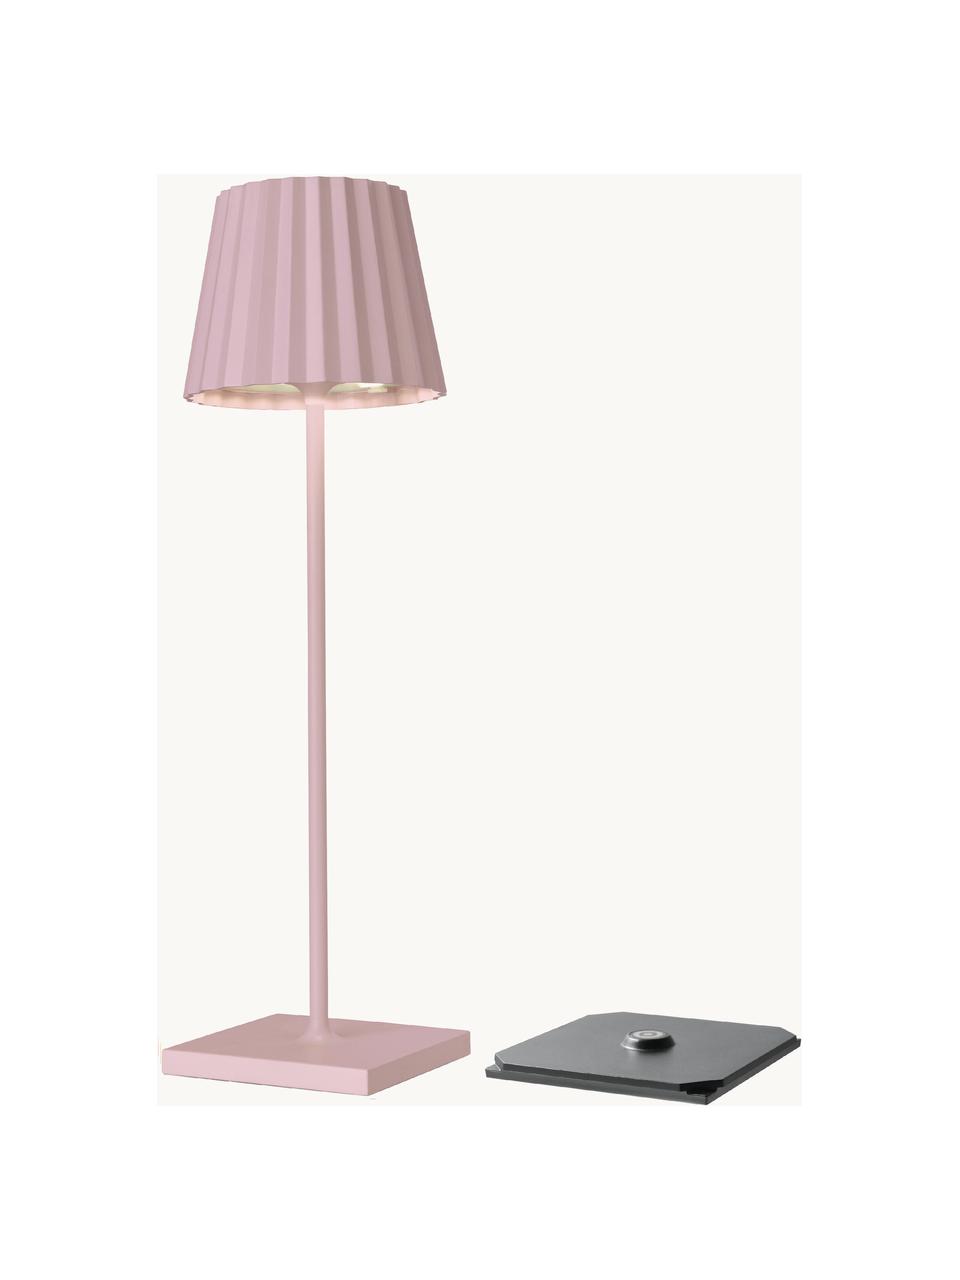 Mobilna lampa stołowa z funkcją przyciemniania Trellia, Aluminium lakierowane, Różowy, Ø 15 x W 38 cm